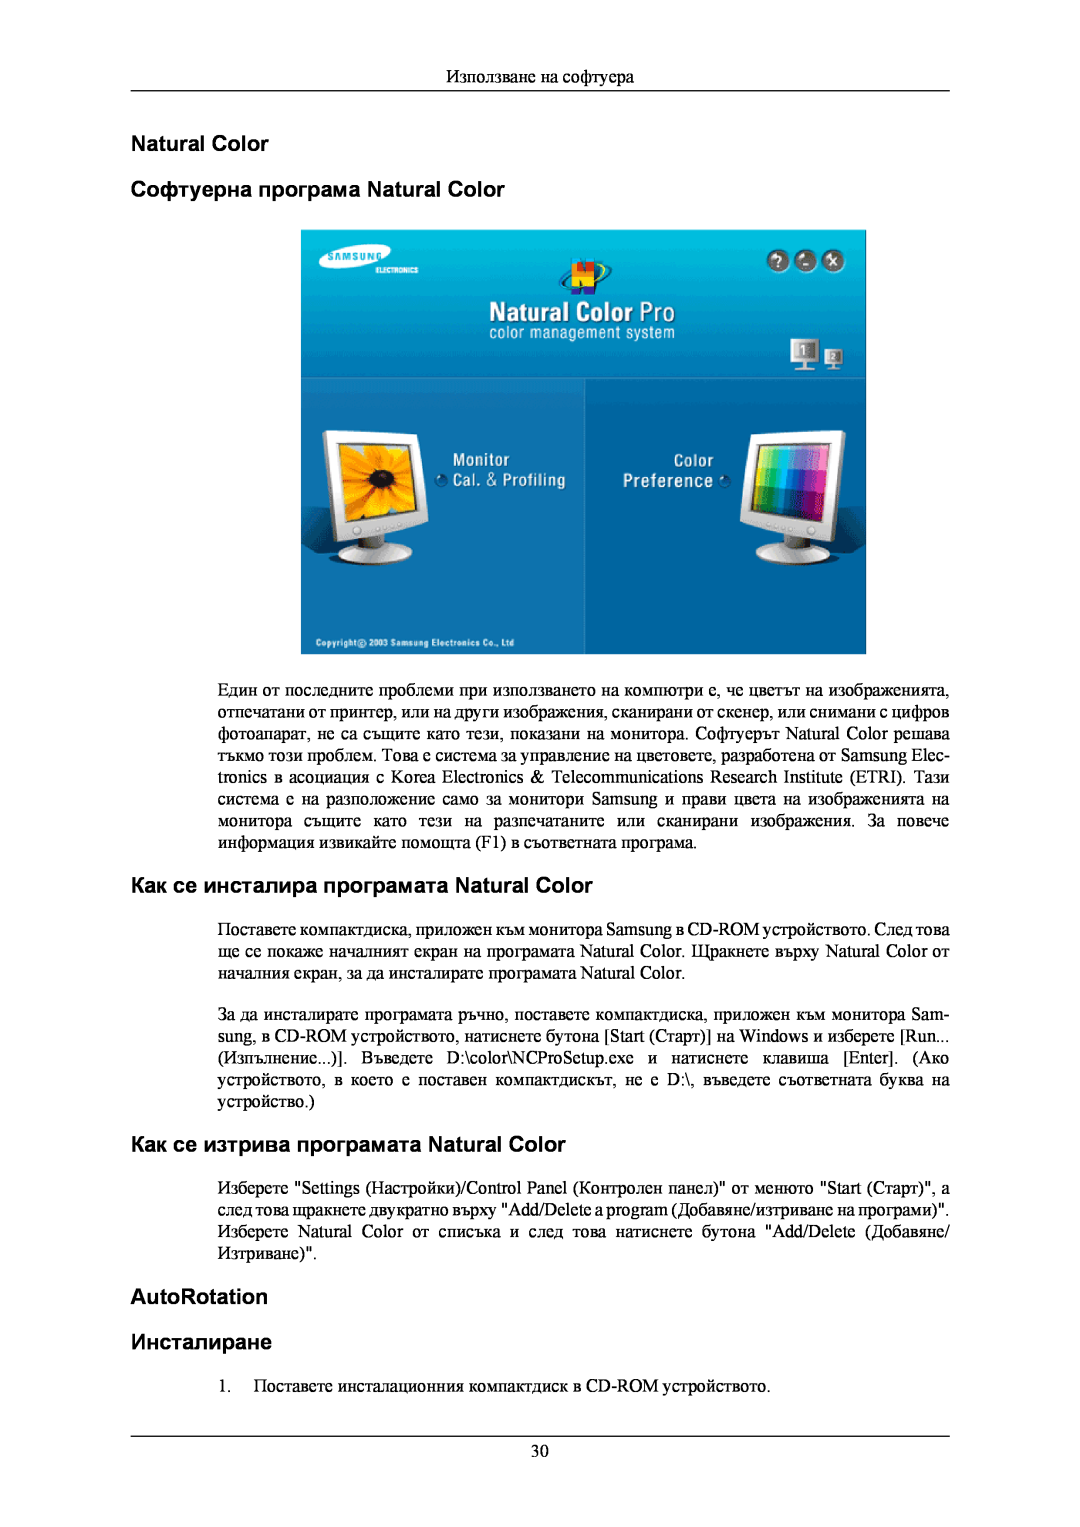 Samsung LS24KIERBQ/EDC manual Natural Color Софтуерна програма Natural Color, Как се инсталира програмата Natural Color 